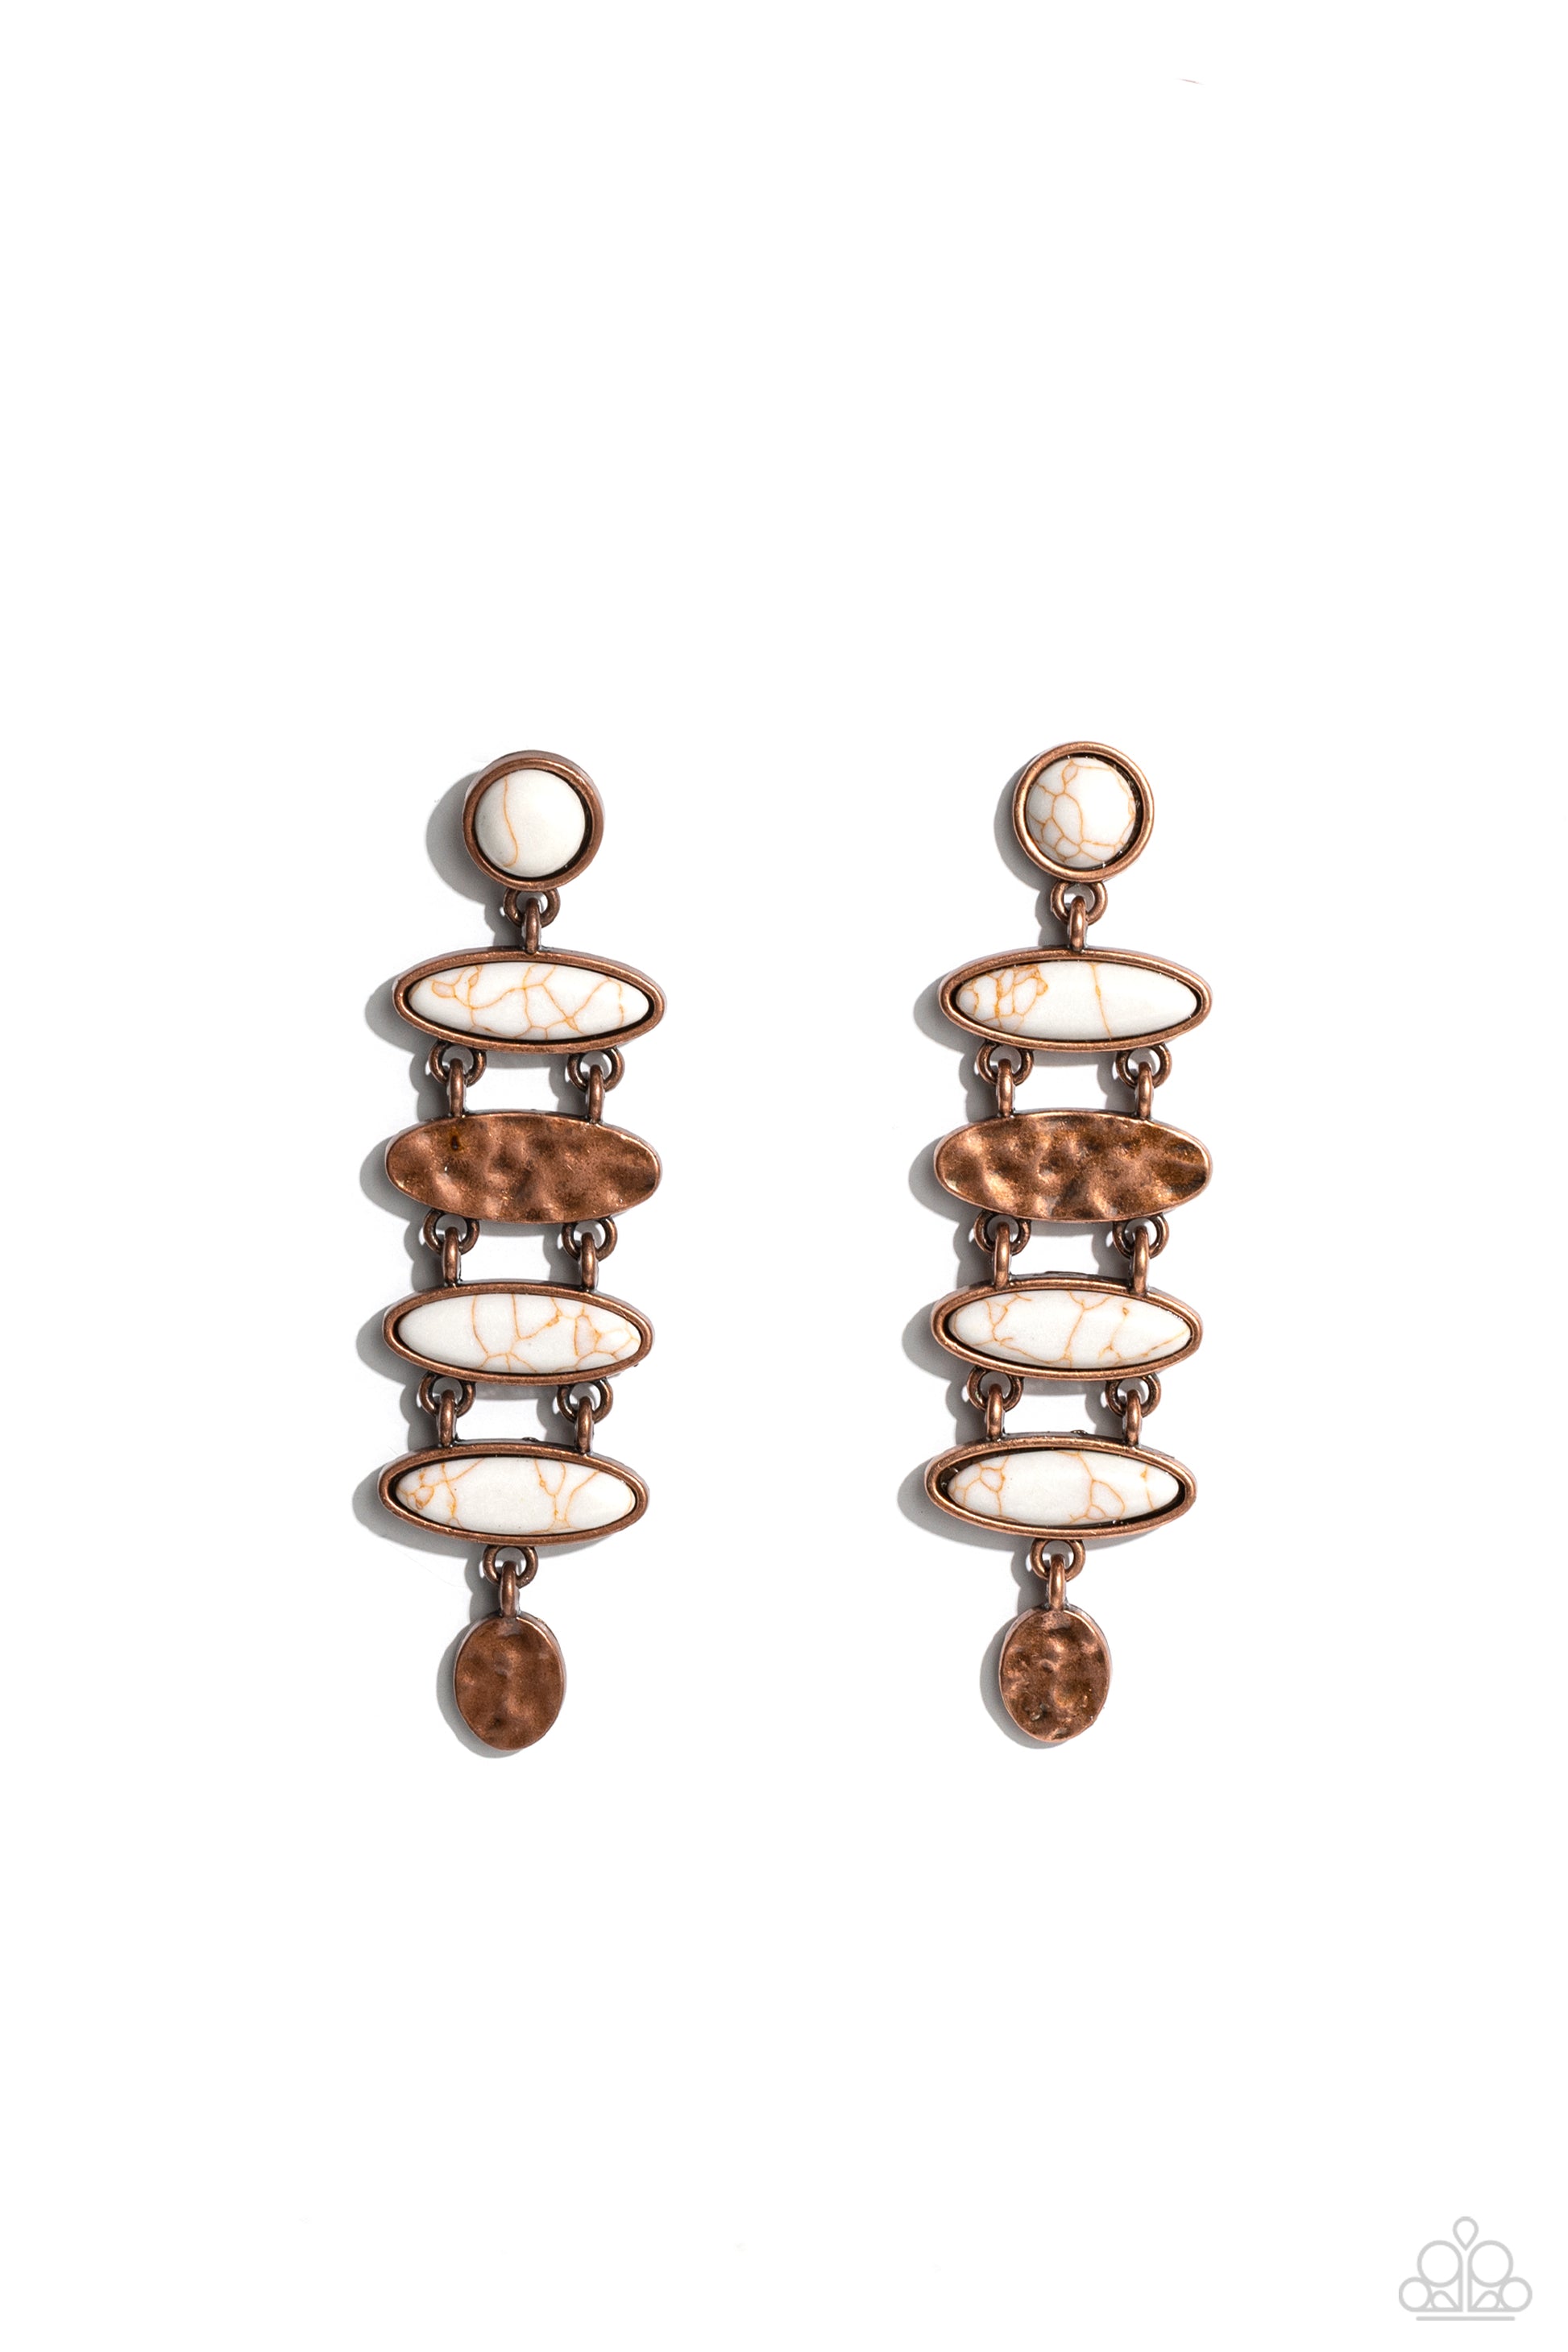 Rustic Reverie - copper - Paparazzi earrings